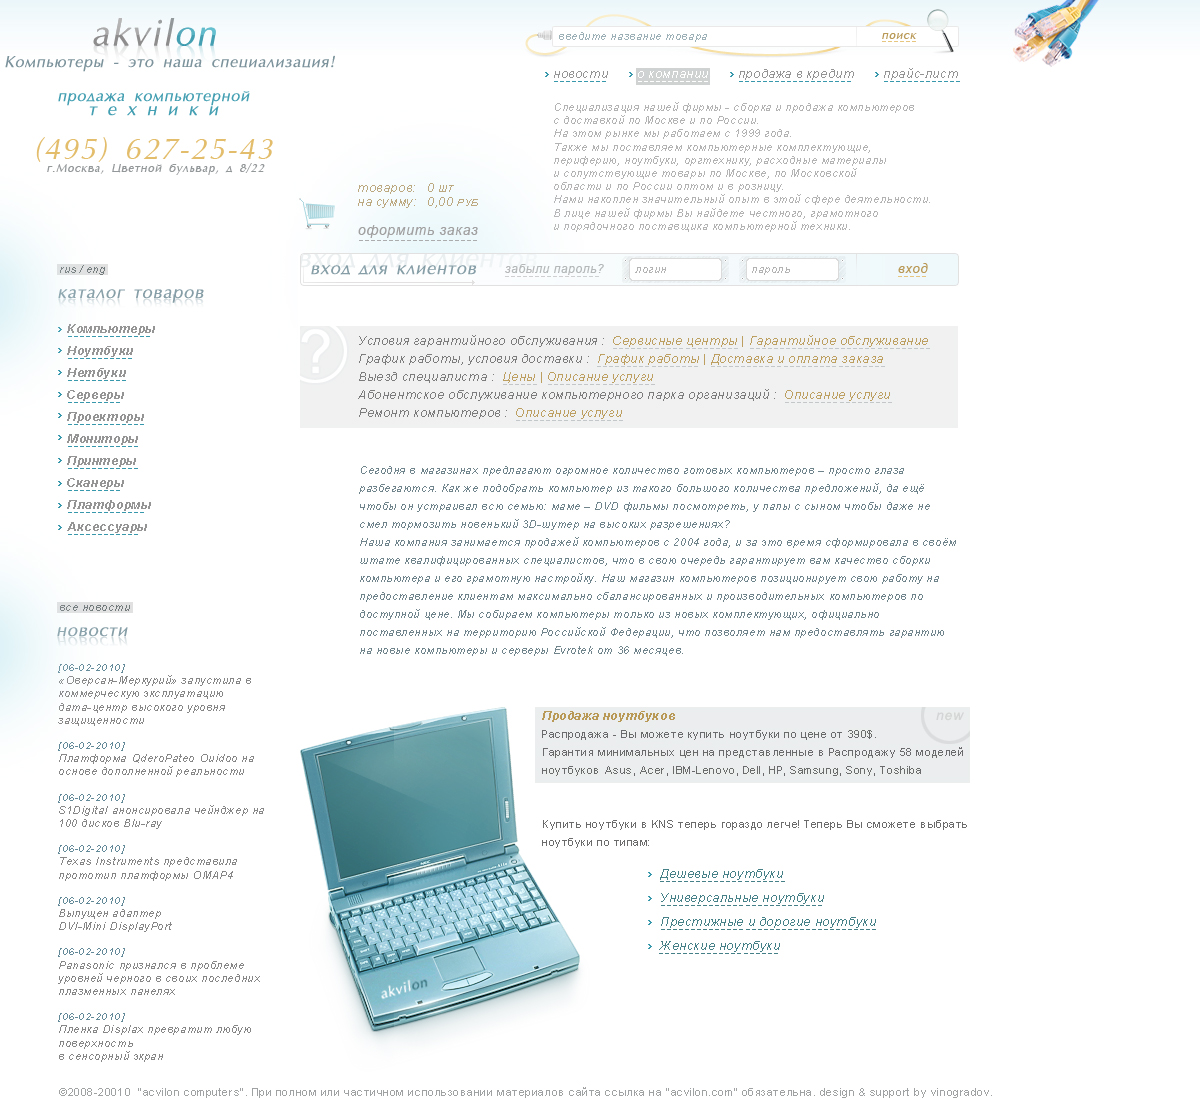 макет сайта для компании akvilon